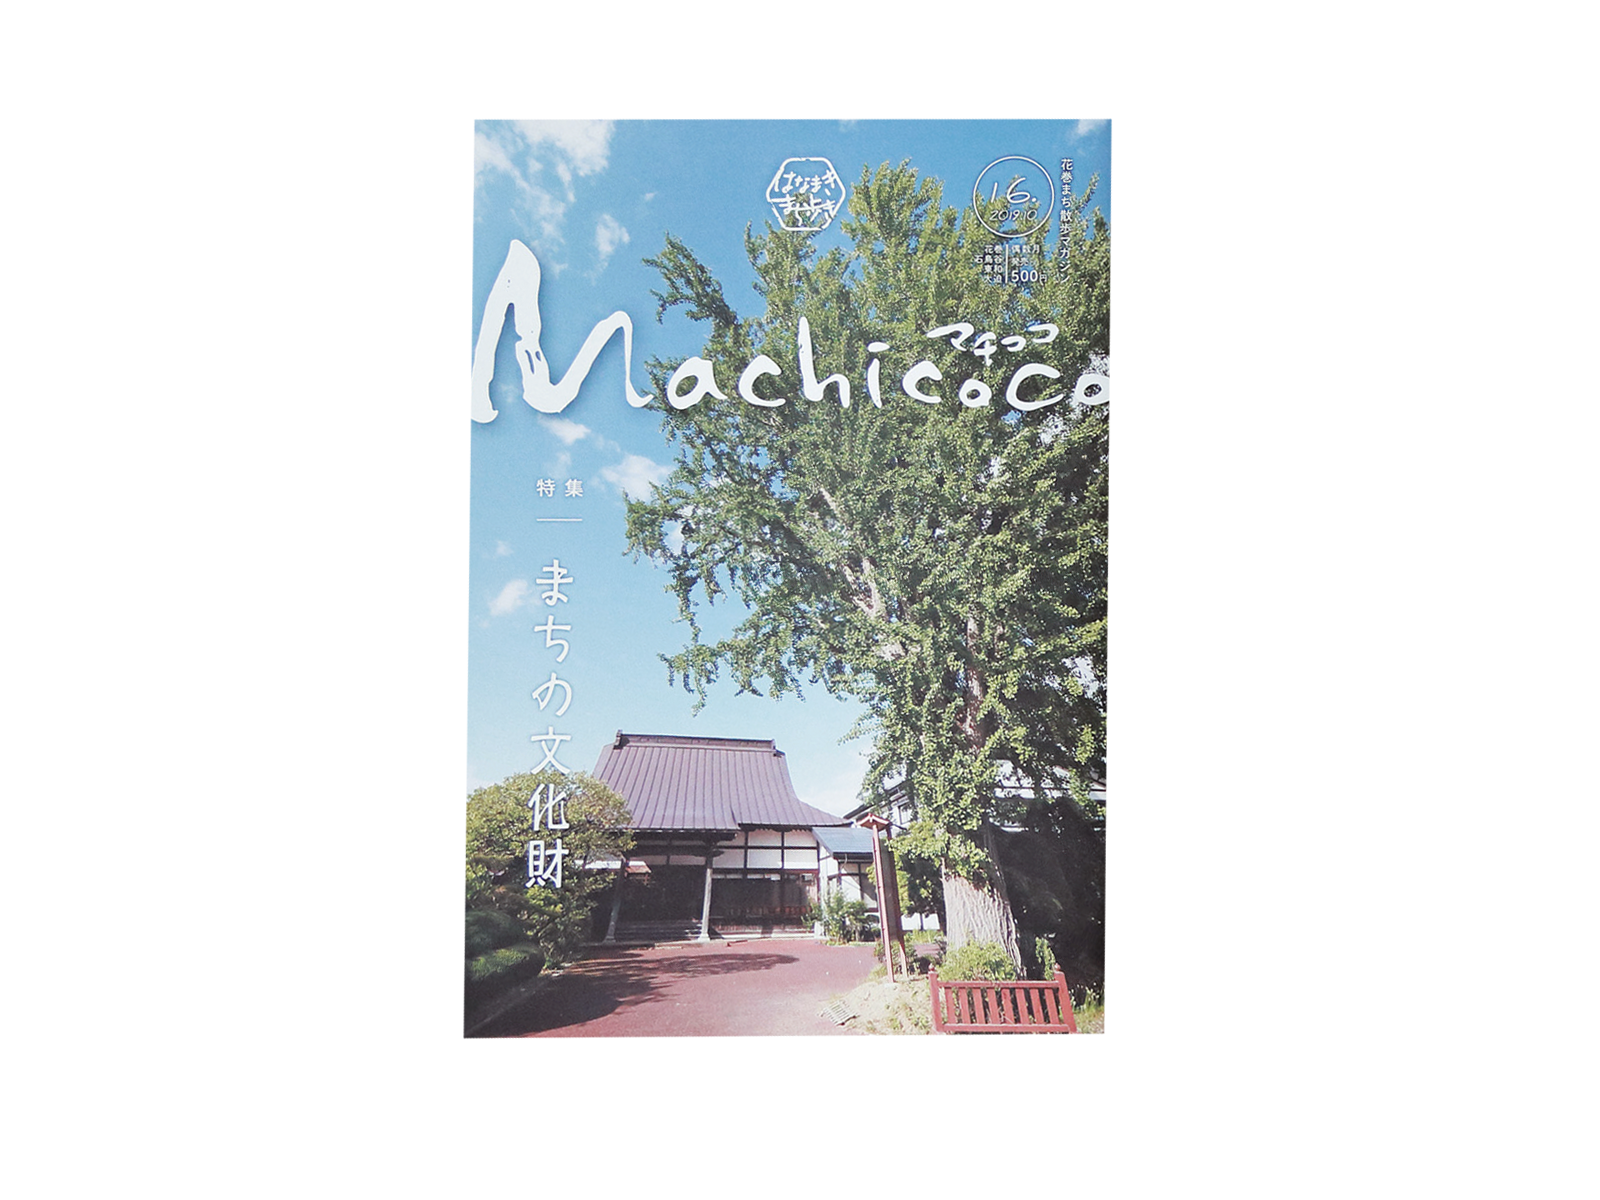 2017年4月から北山さんが出版しているタウン誌『Machicoco』。